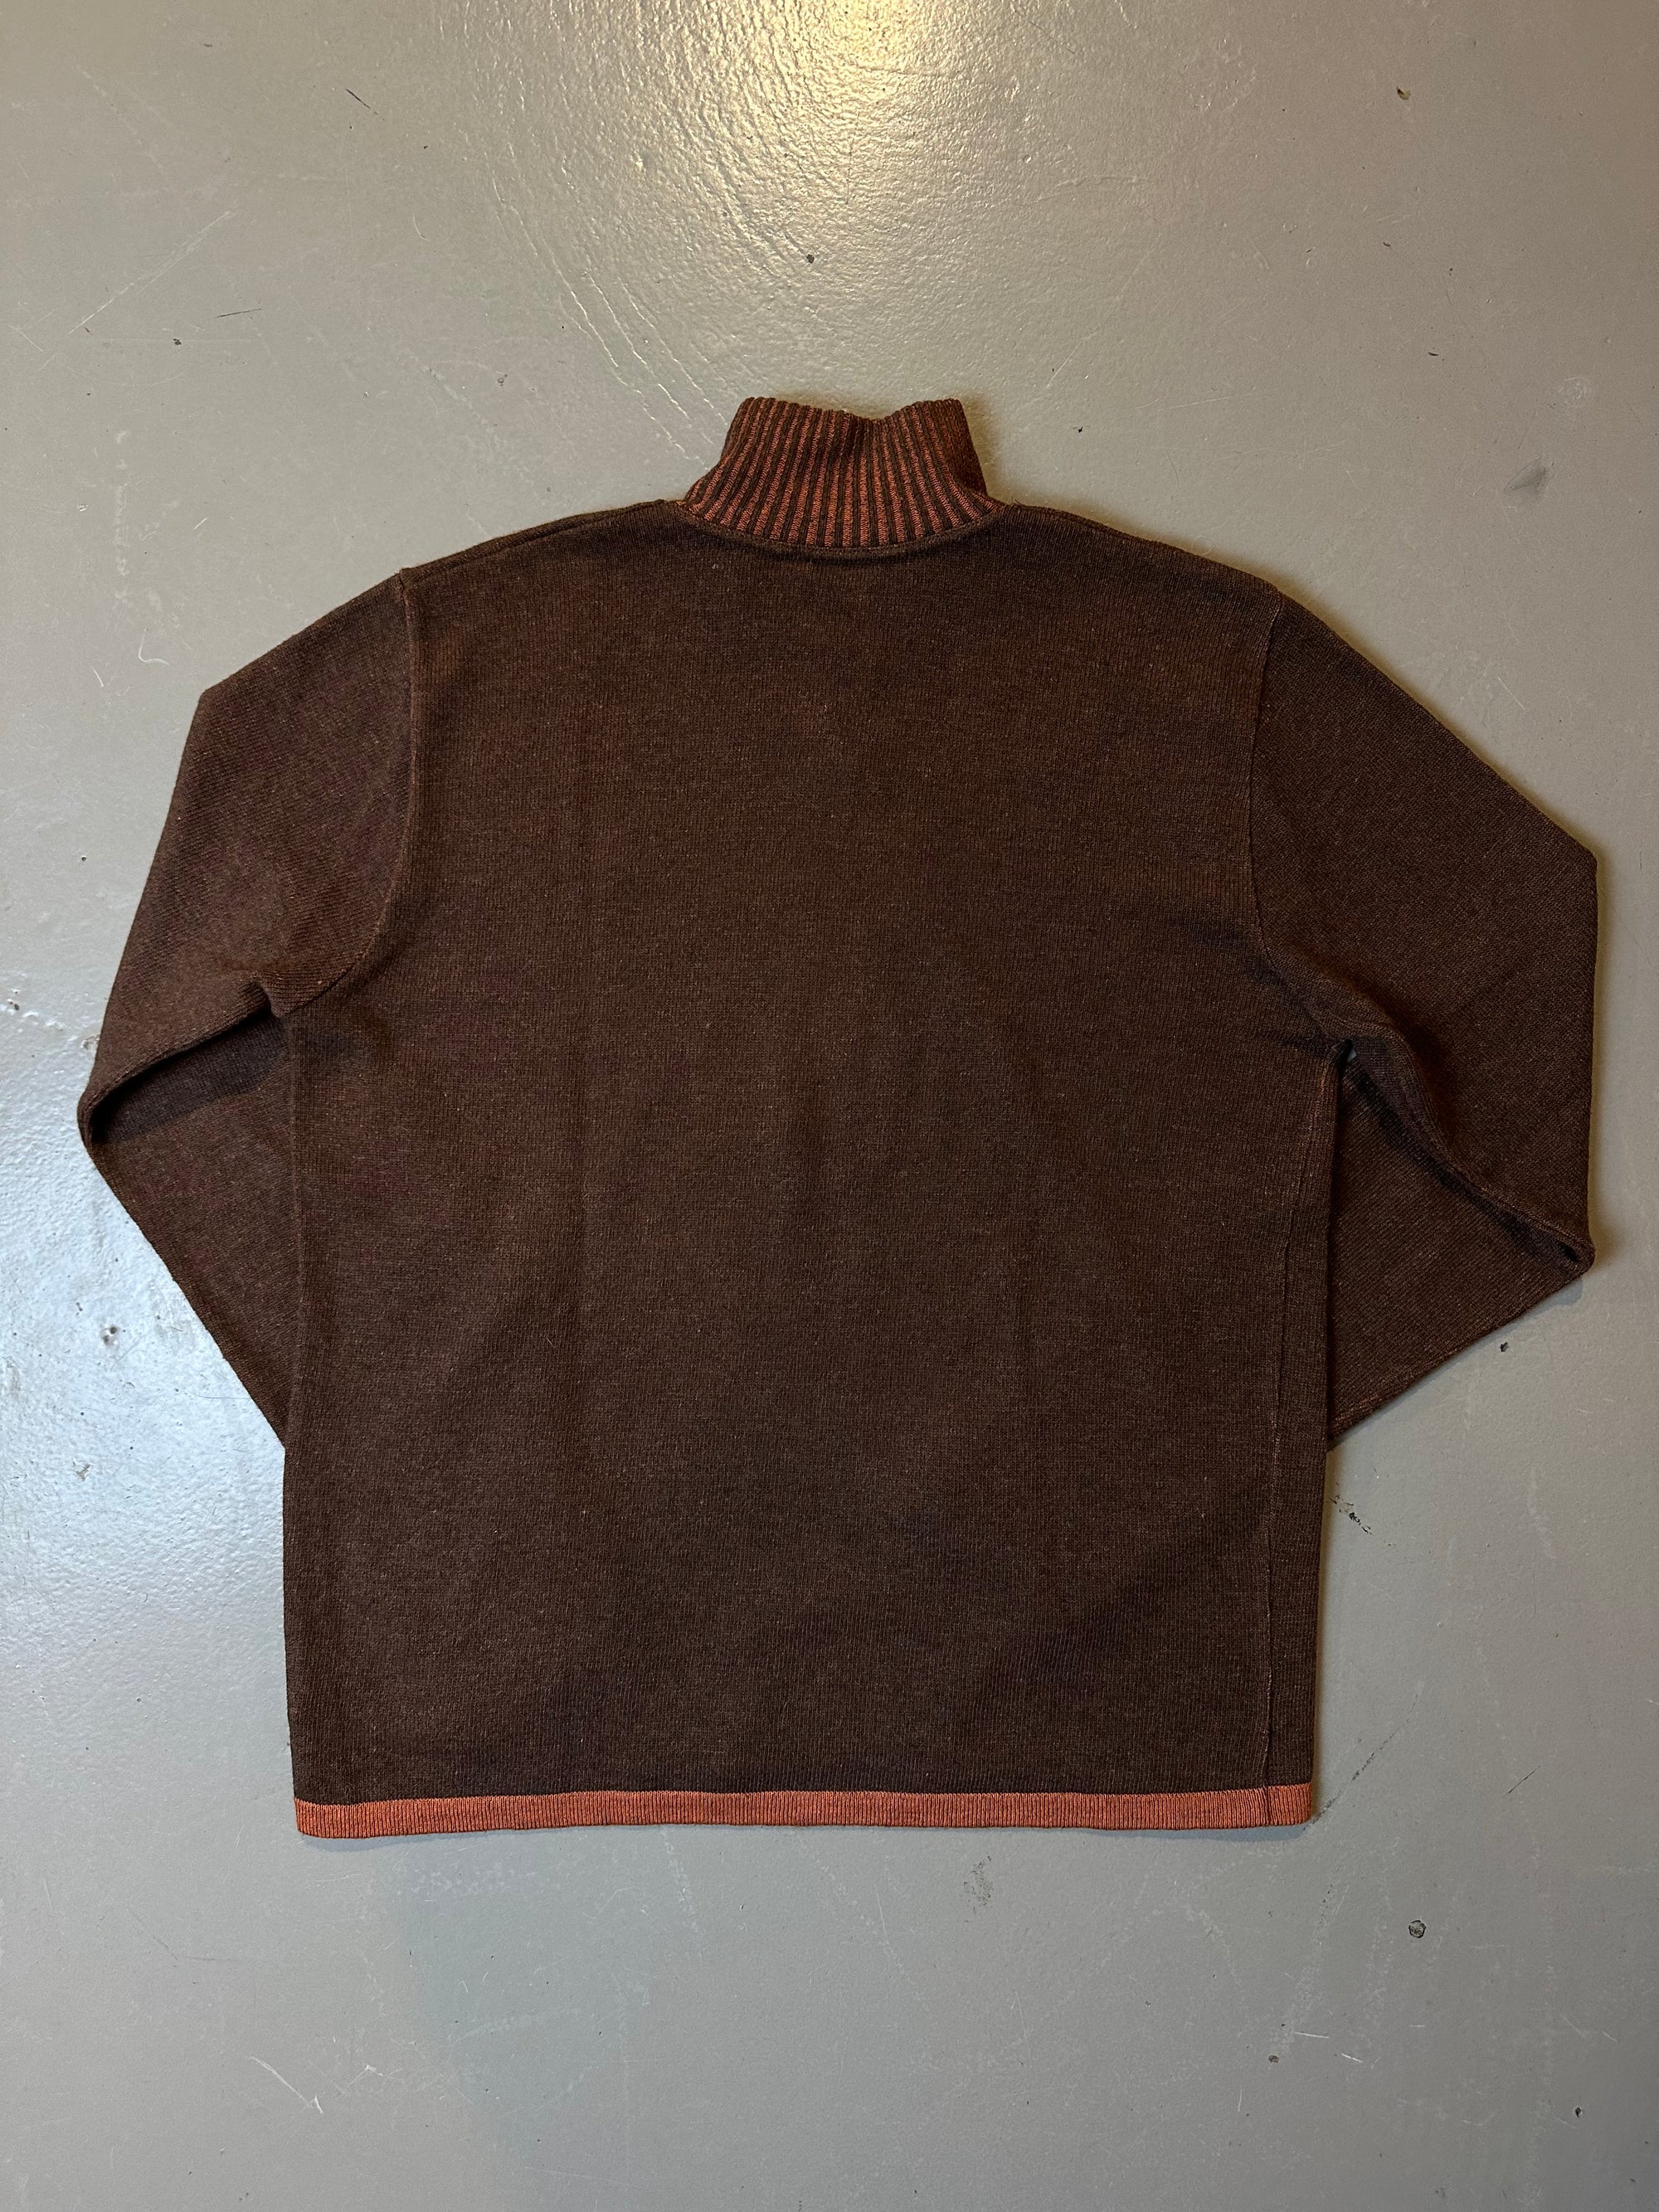 Vintage Trussardi Knit Sweater M/L In verschiedenen Brauntönen  Von hinten 